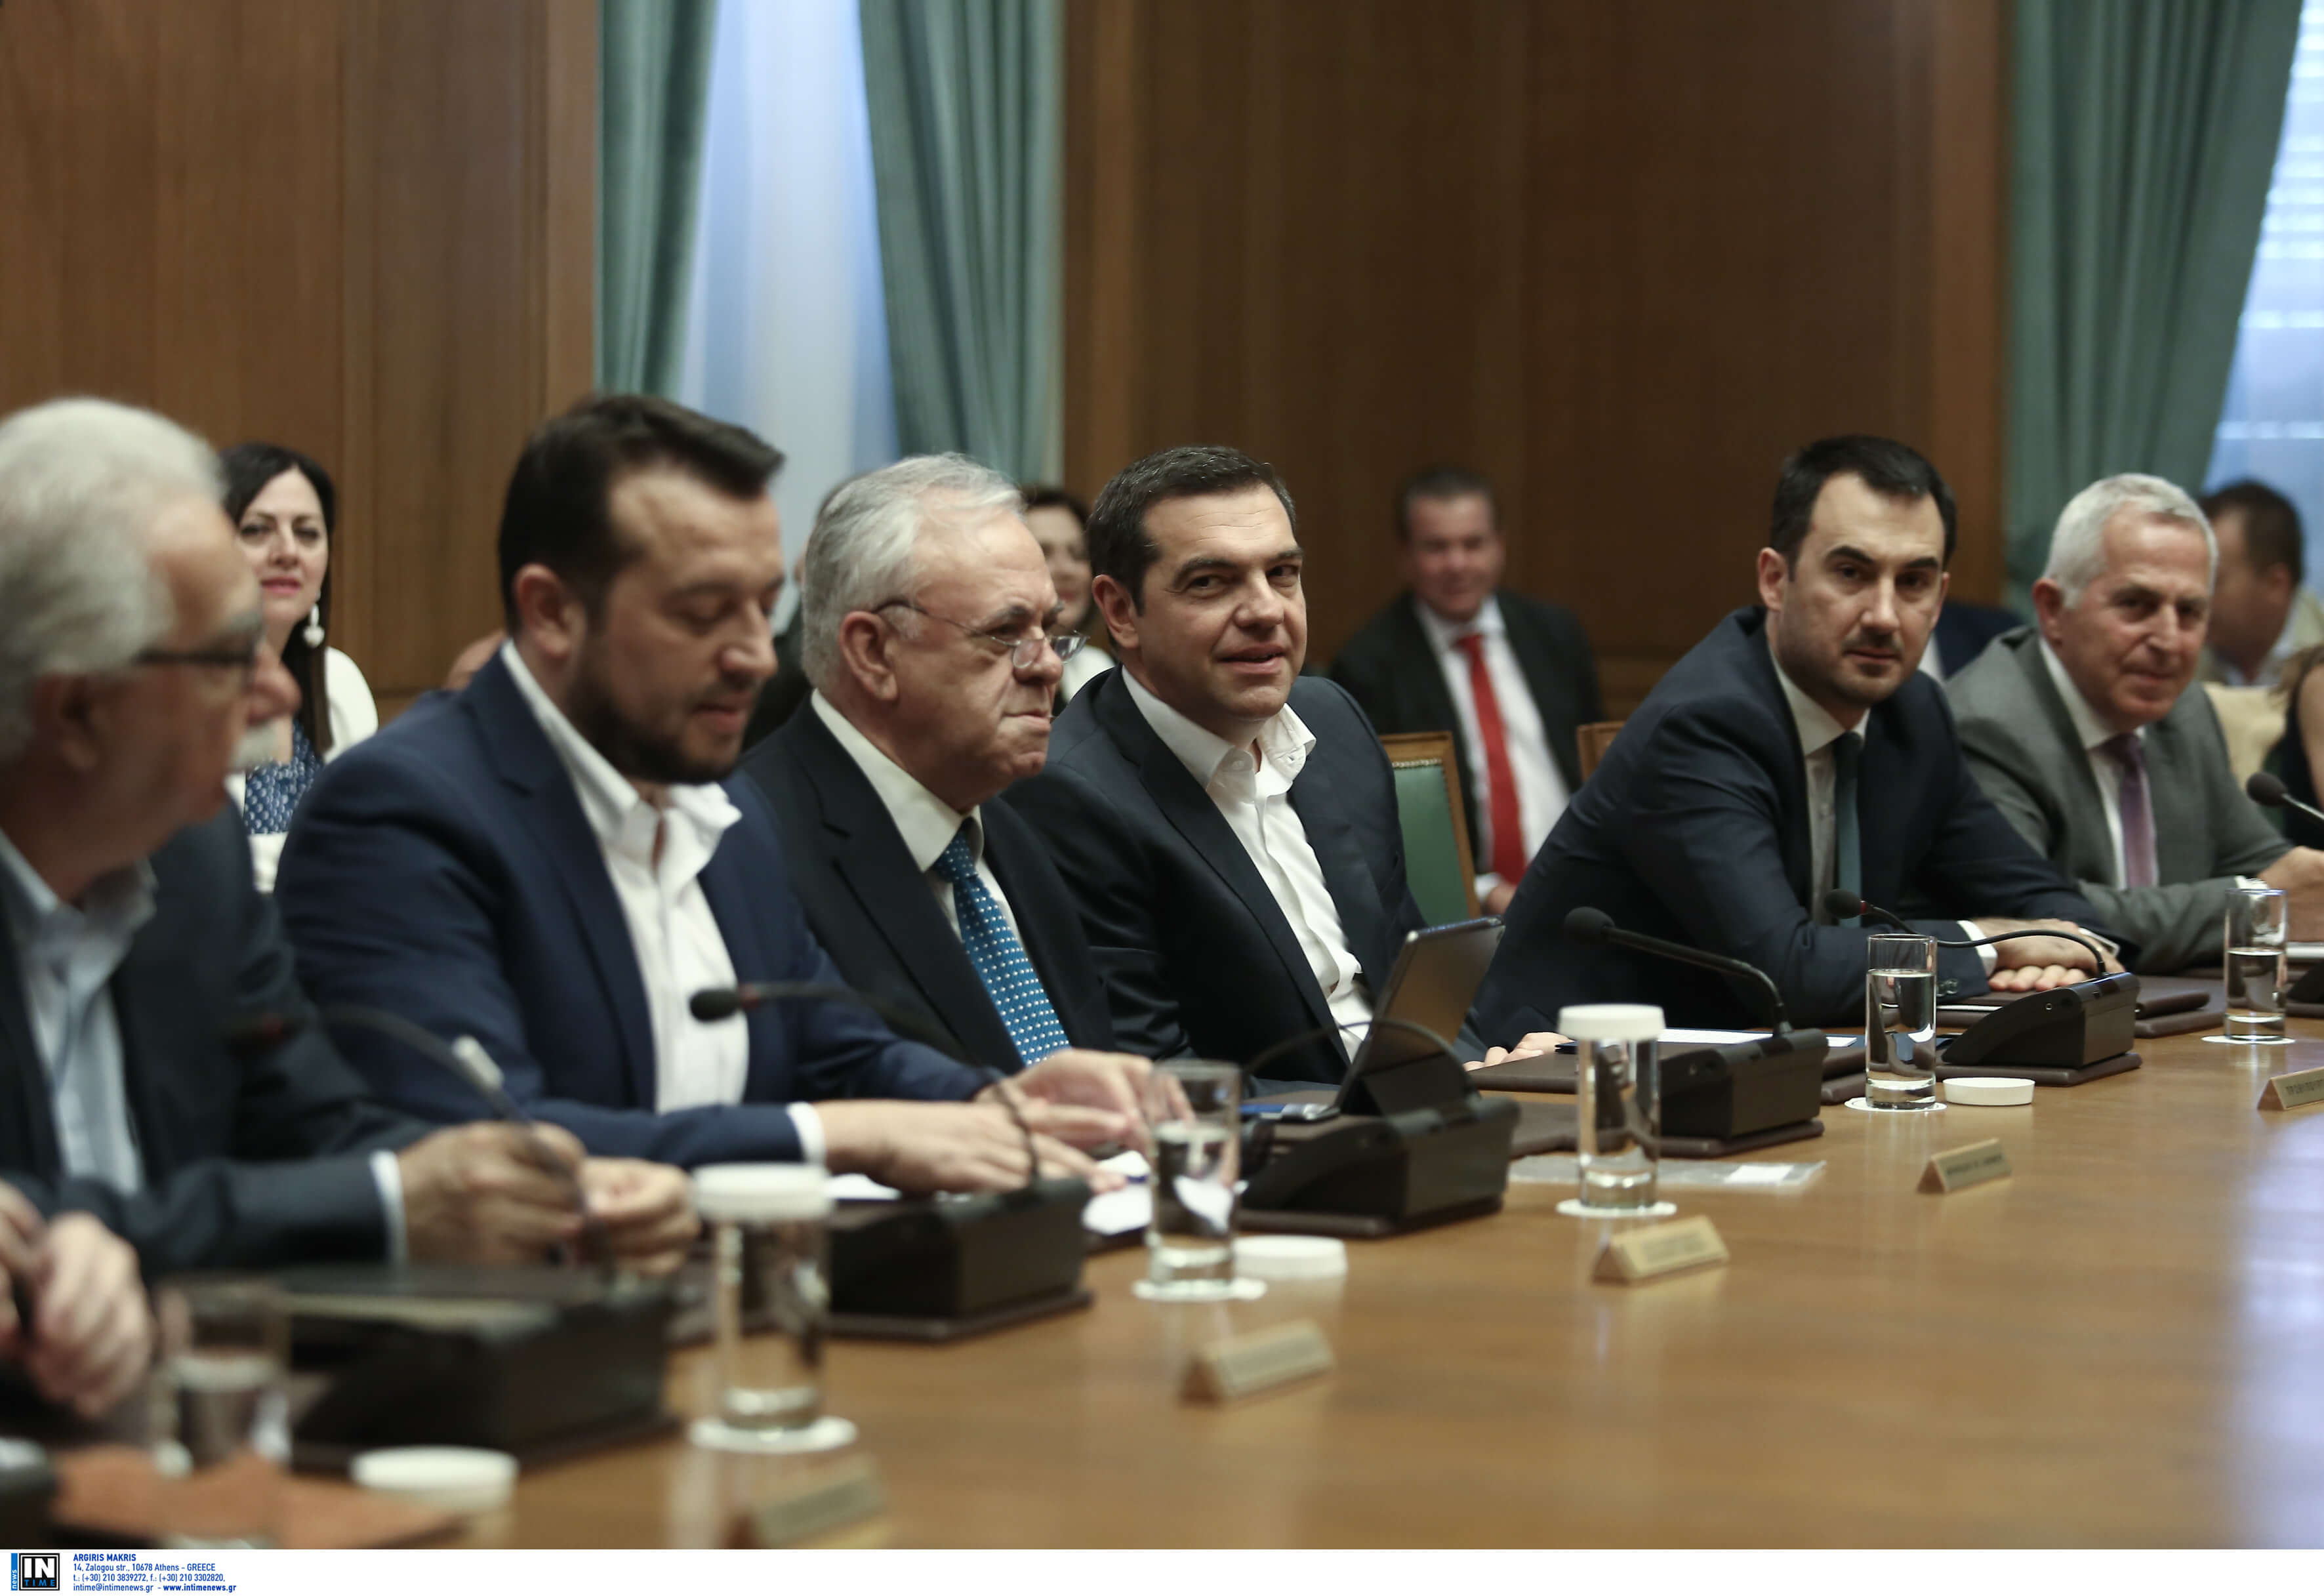 Υπουργικό συμβούλιο: Κλειστή η συνεδρίαση αλλά λαλίστατοι οι υπουργοί